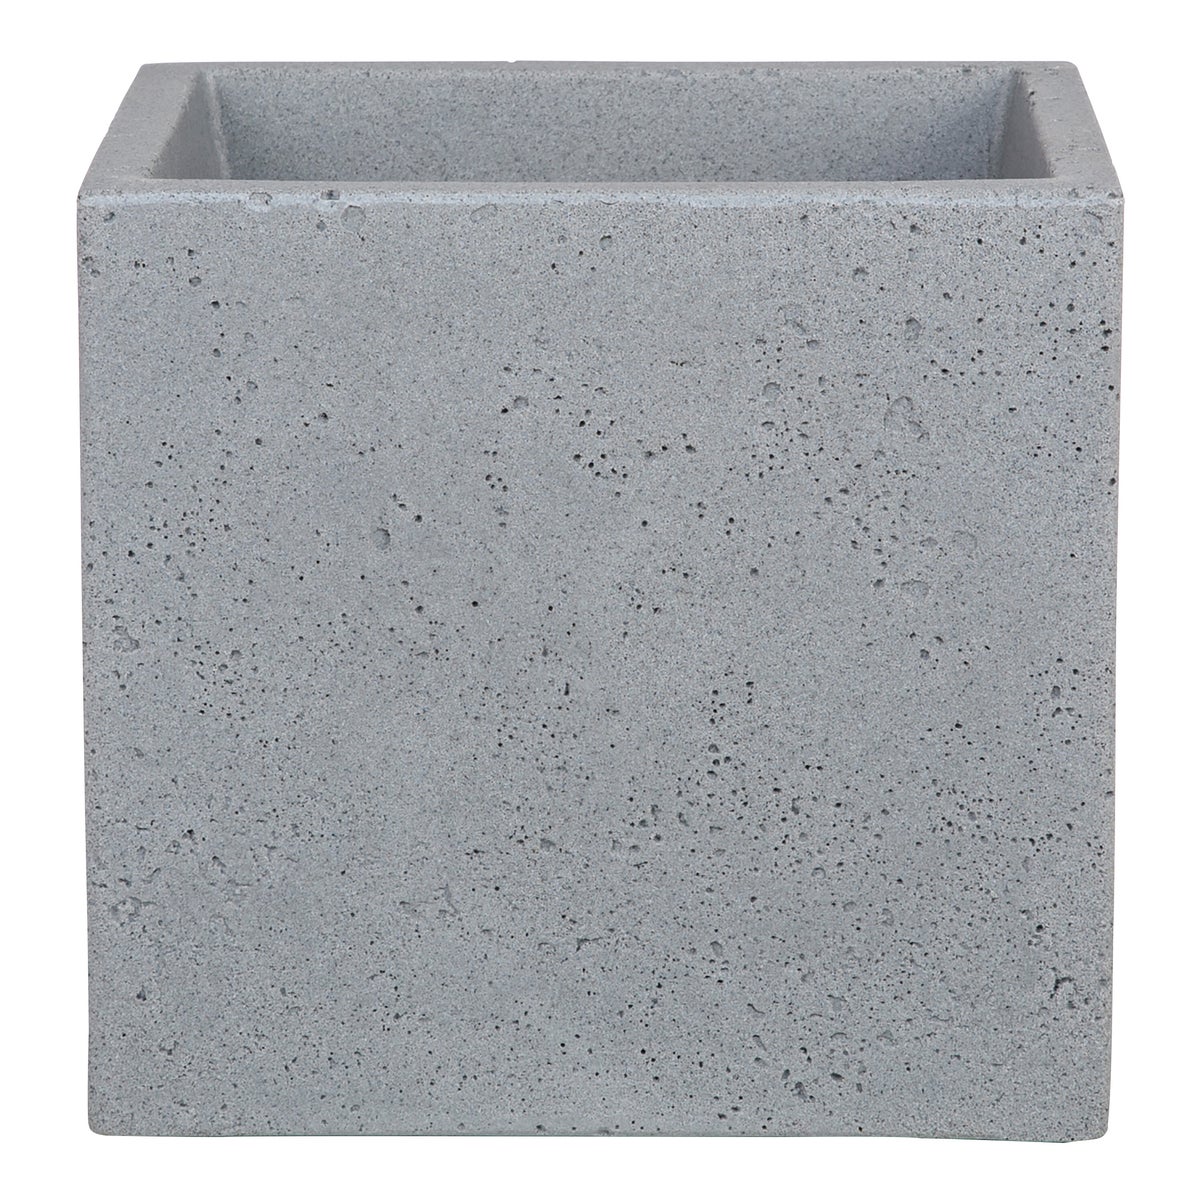 Scheurich C-Cube 40, Pflanzgefäß/Blumentopf/Pflanzkübel, quadratisch,  aus Kunststoff Farbe: Stony Grey, 38 cm Durchmesser, 33 cm hoch, 44 l Vol.